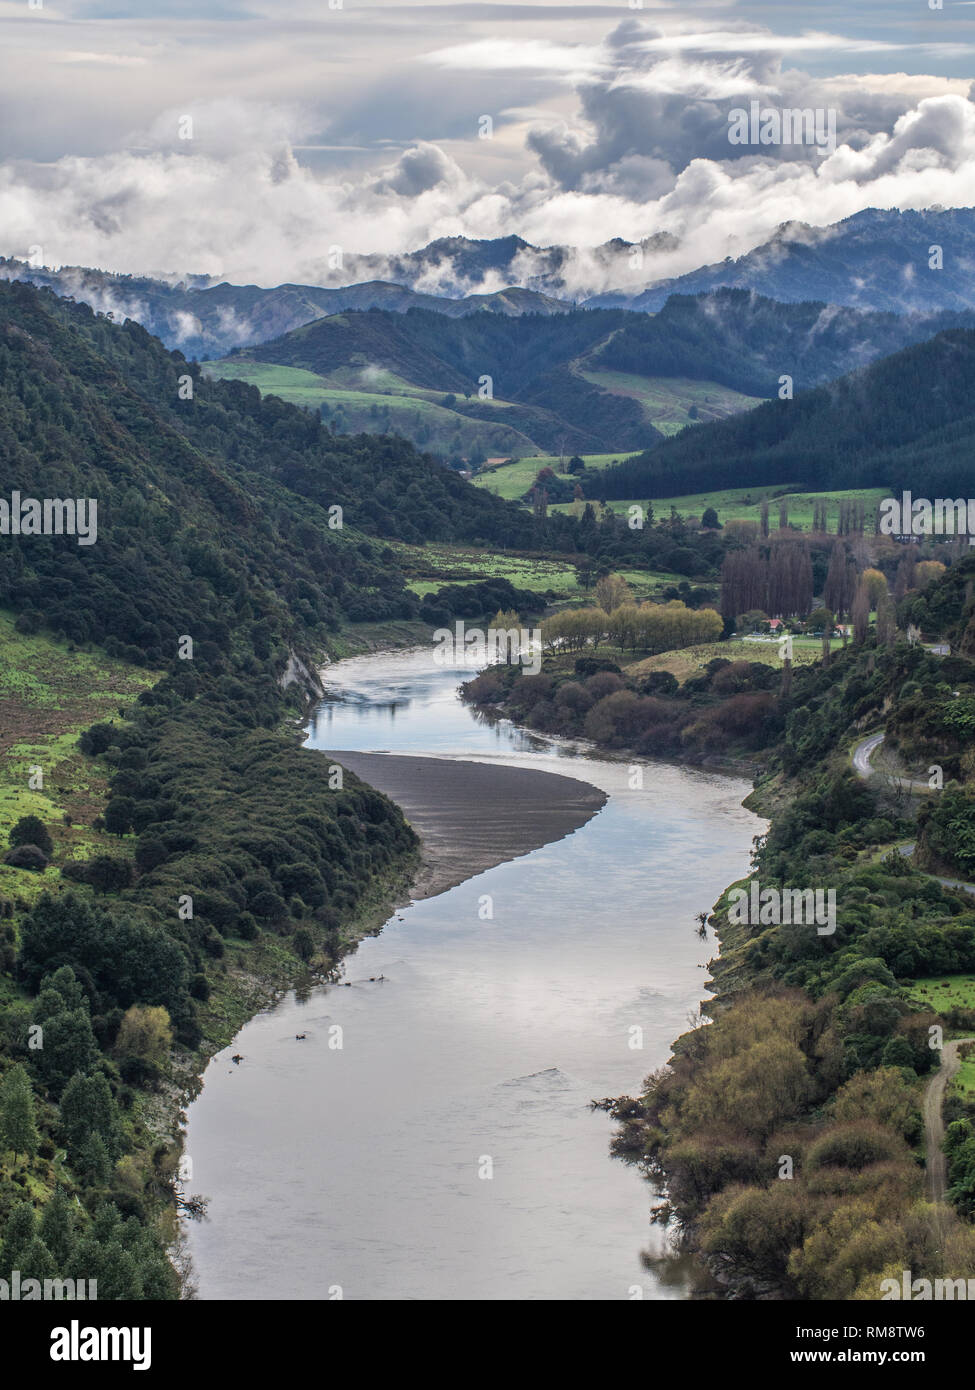 La rivière Whanganui, coulant à travers la montagne, forêt et pâturage, vue d'Aramoana, île du Nord, Nouvelle Zélande Banque D'Images